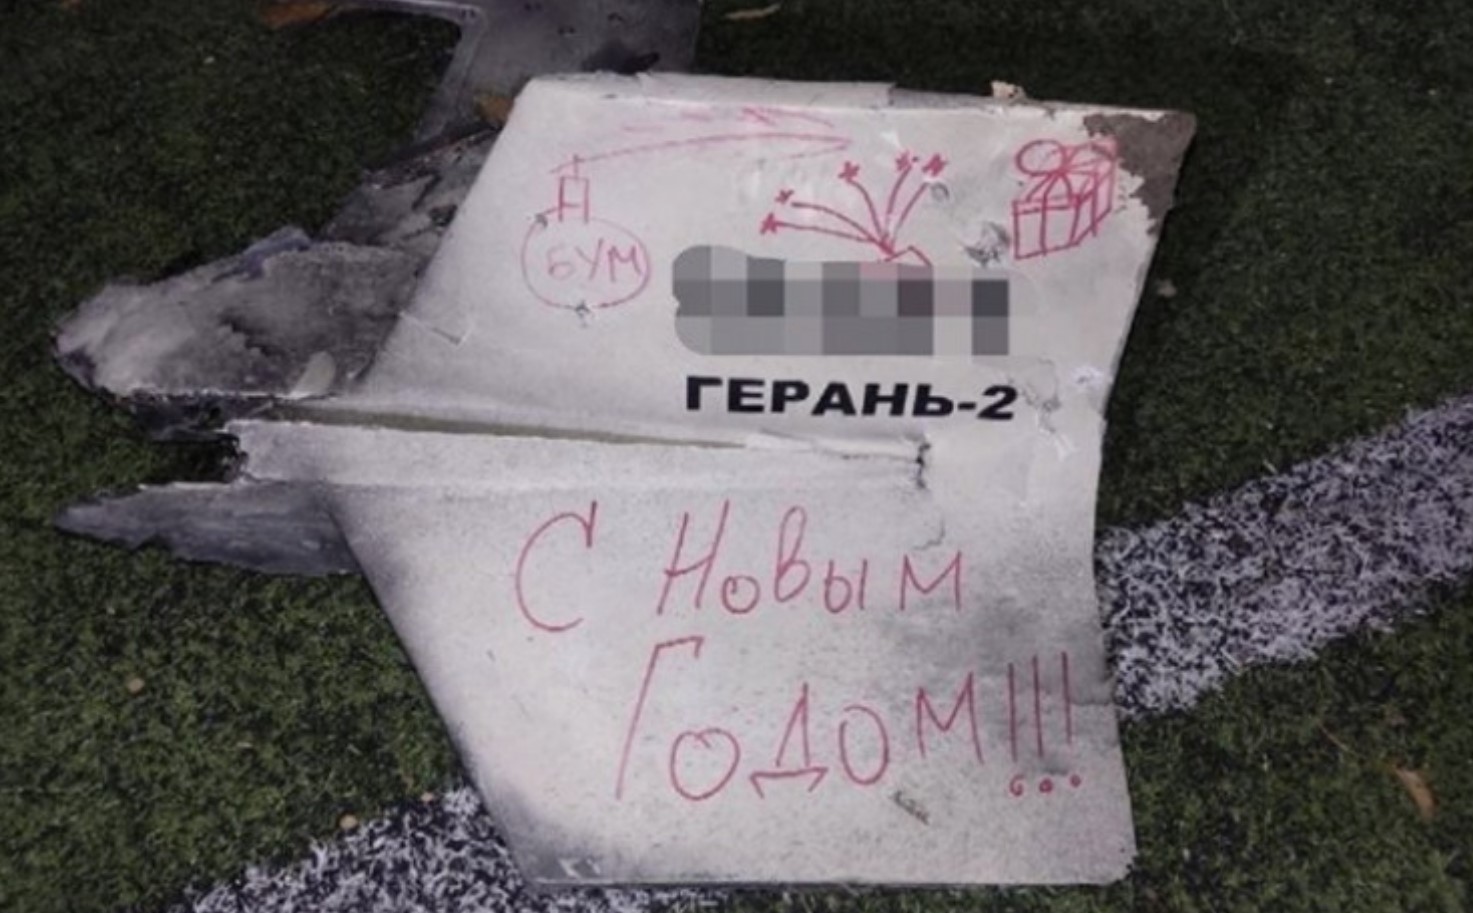 Ukrajinska policija: Na dronu koji je jučer pogodio Kijev piše "Sretna Nova godina"